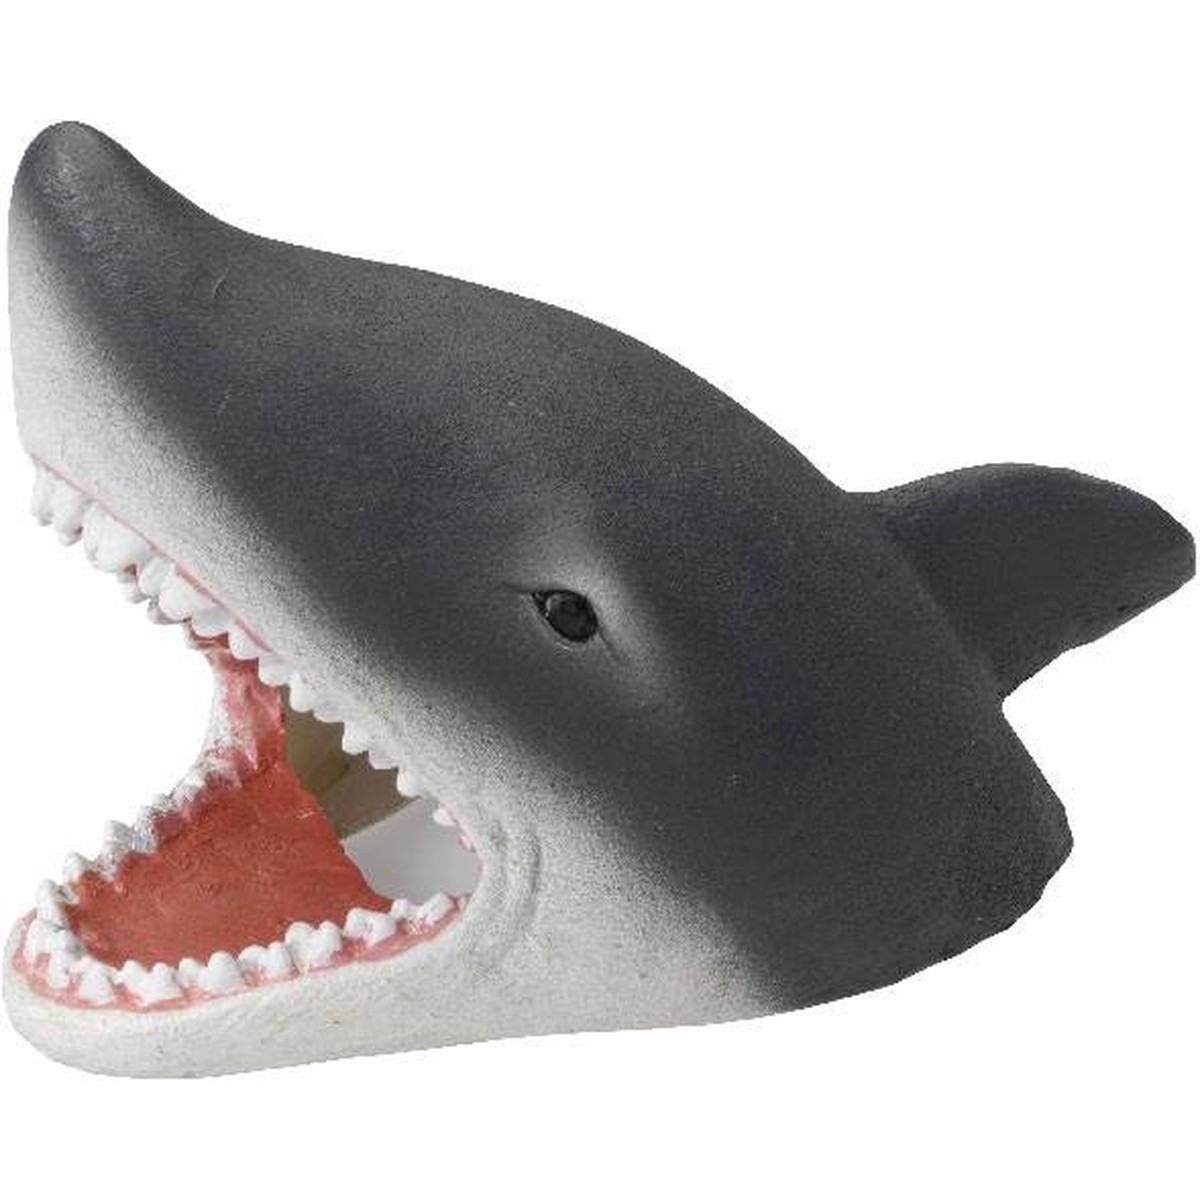   Décor visage de requin 15.5 x 7.8 x 10cm  15.5 x 7.8 cm H 10 cm